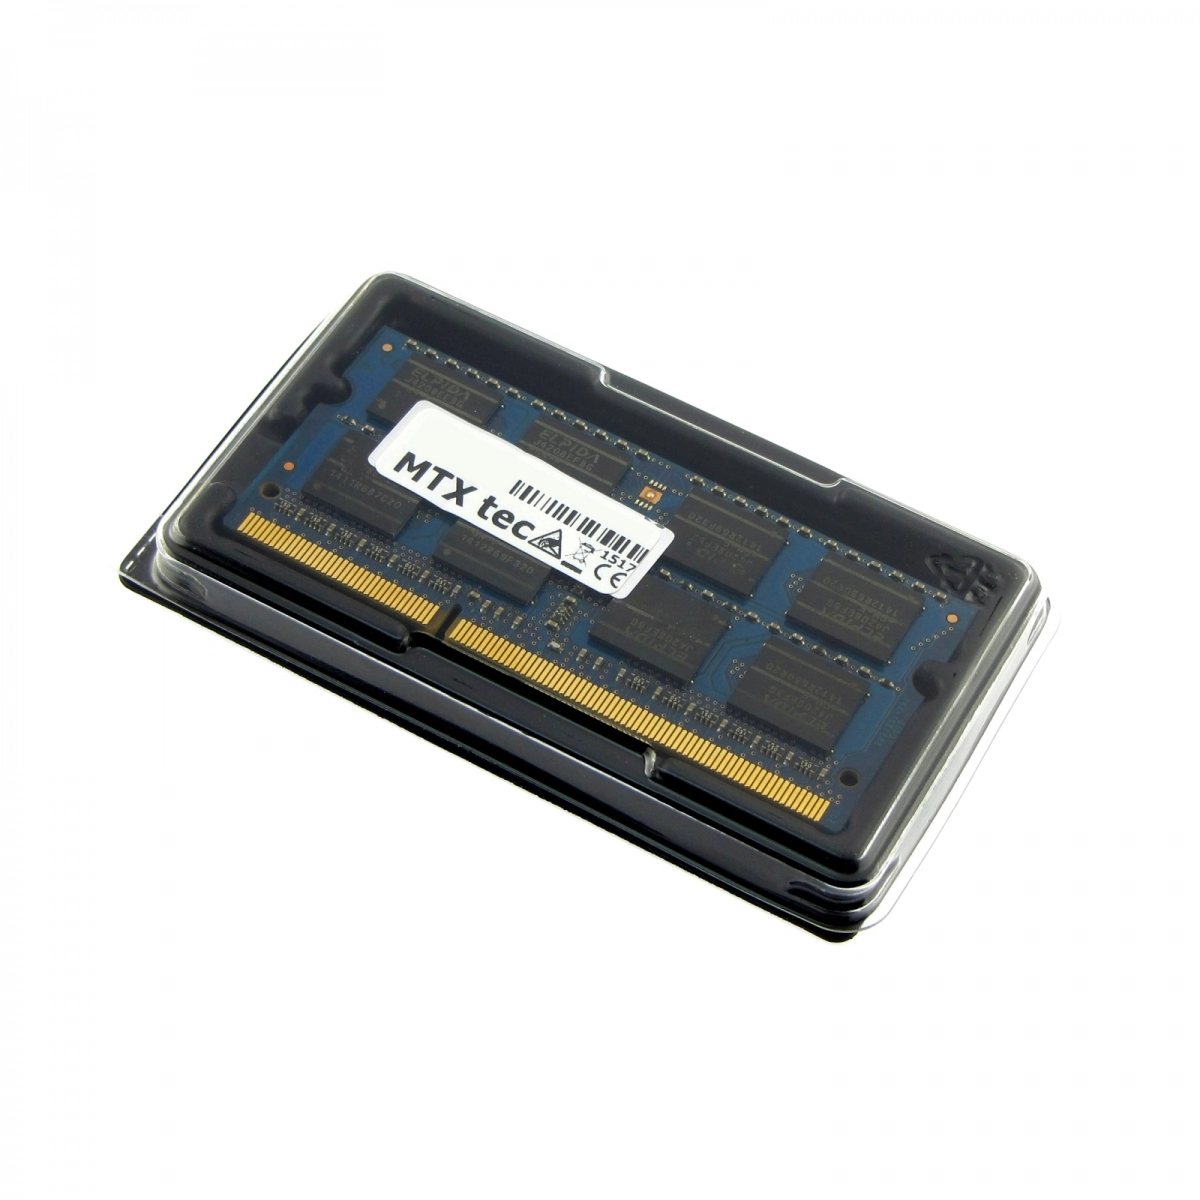 MTXtec Arbeitsspeicher 4 GB RAM für LENOVO G710